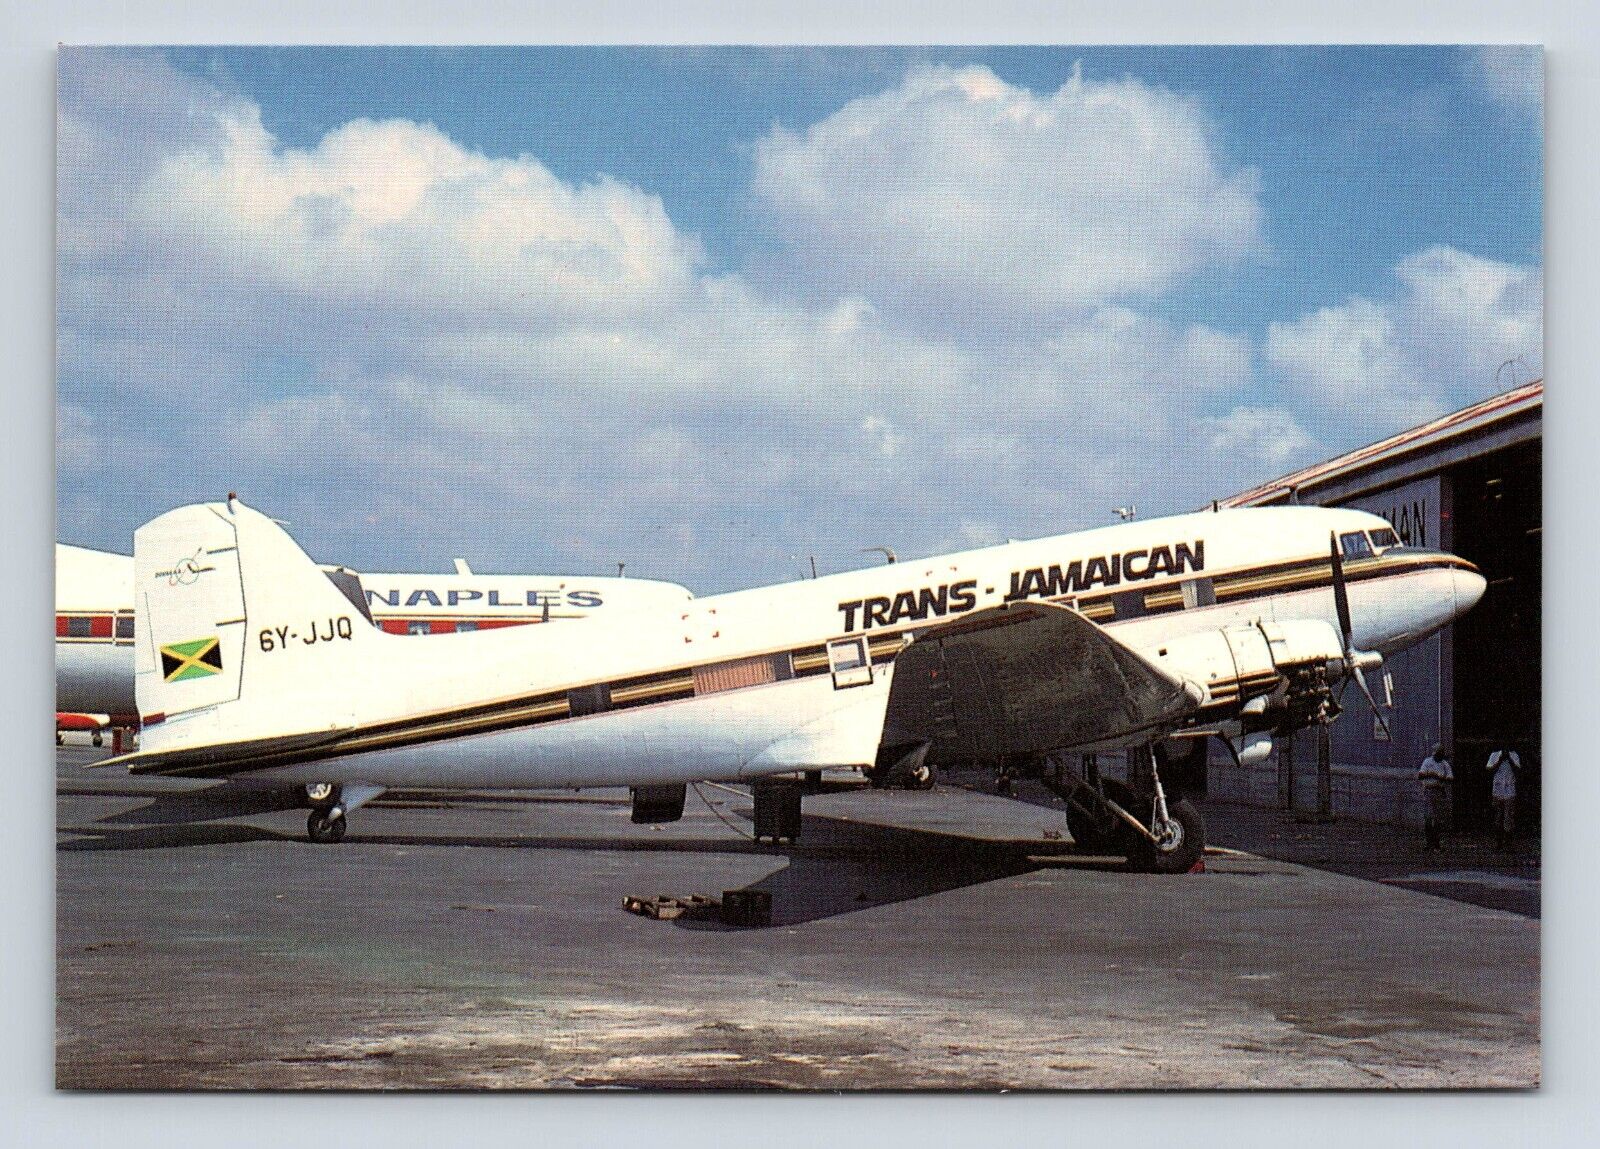 Trans Jamaican DC-3 6Y-JJQ cn 9108 Airplane Airline Aircraft Postcard Vtg A5